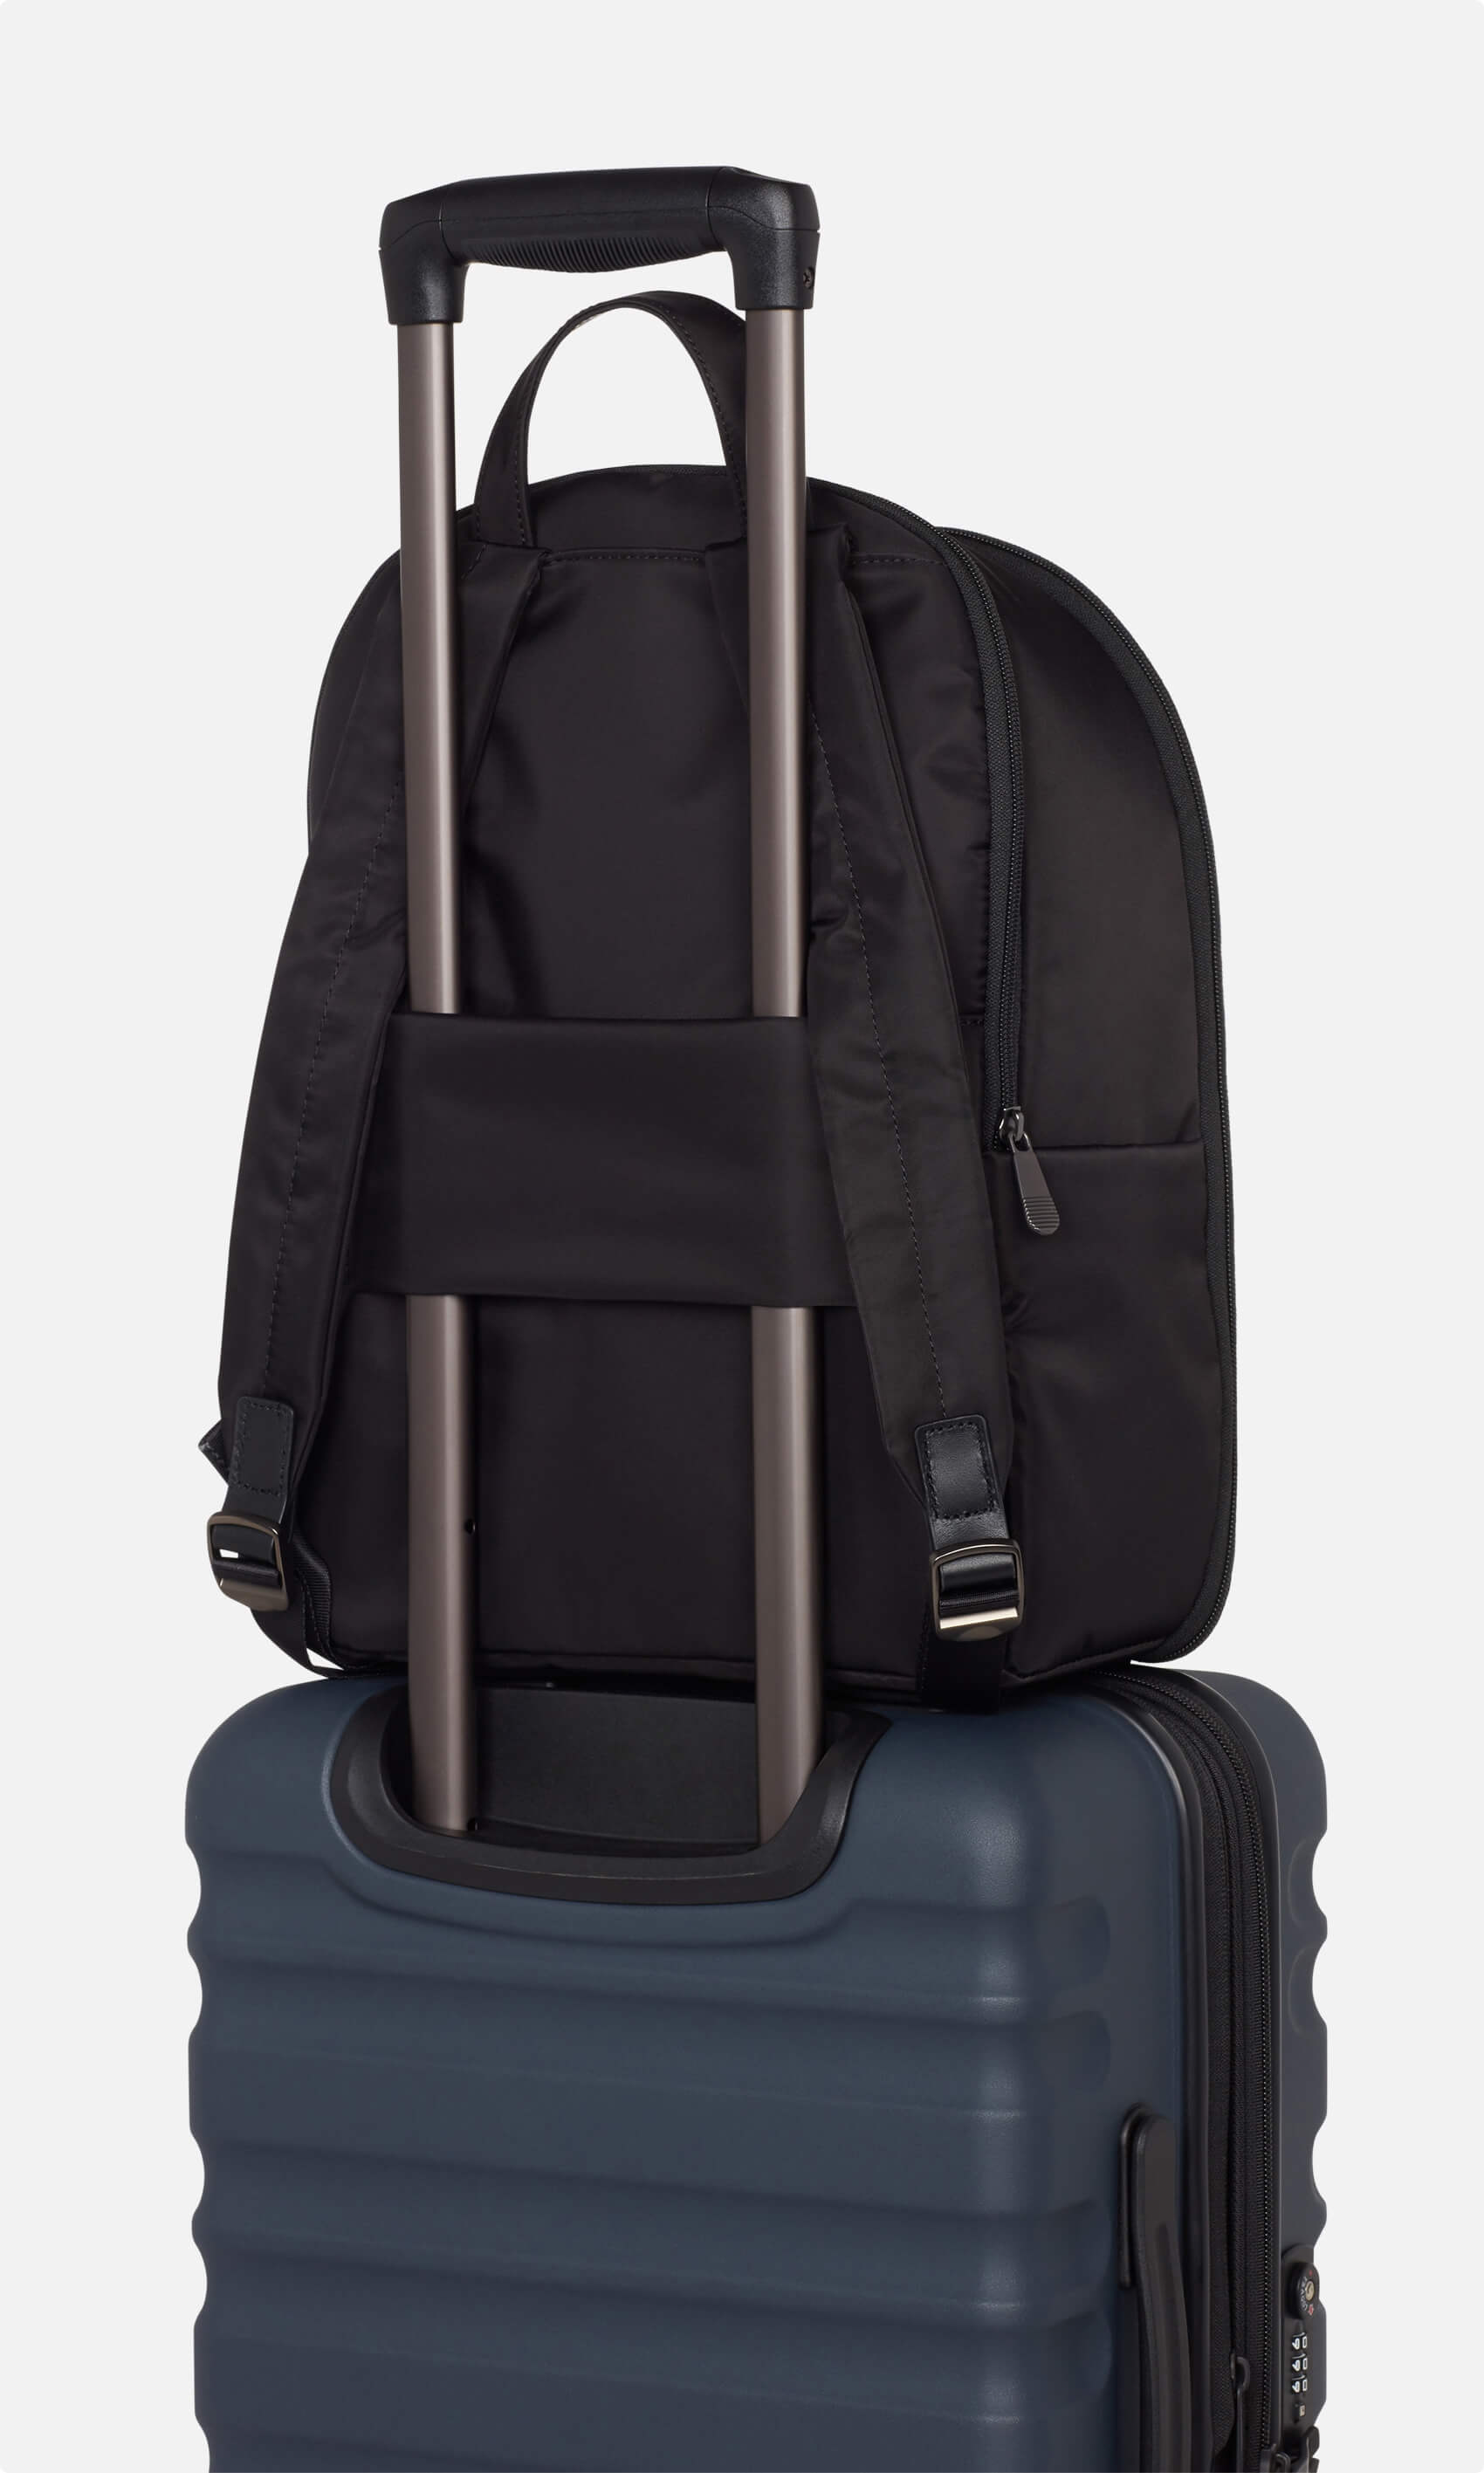 Antler Luggage -  Chelsea large backpack in black - Backpacks Chelsea Large Backpack Black | Travel & Lifestyle Bags | Antler UK